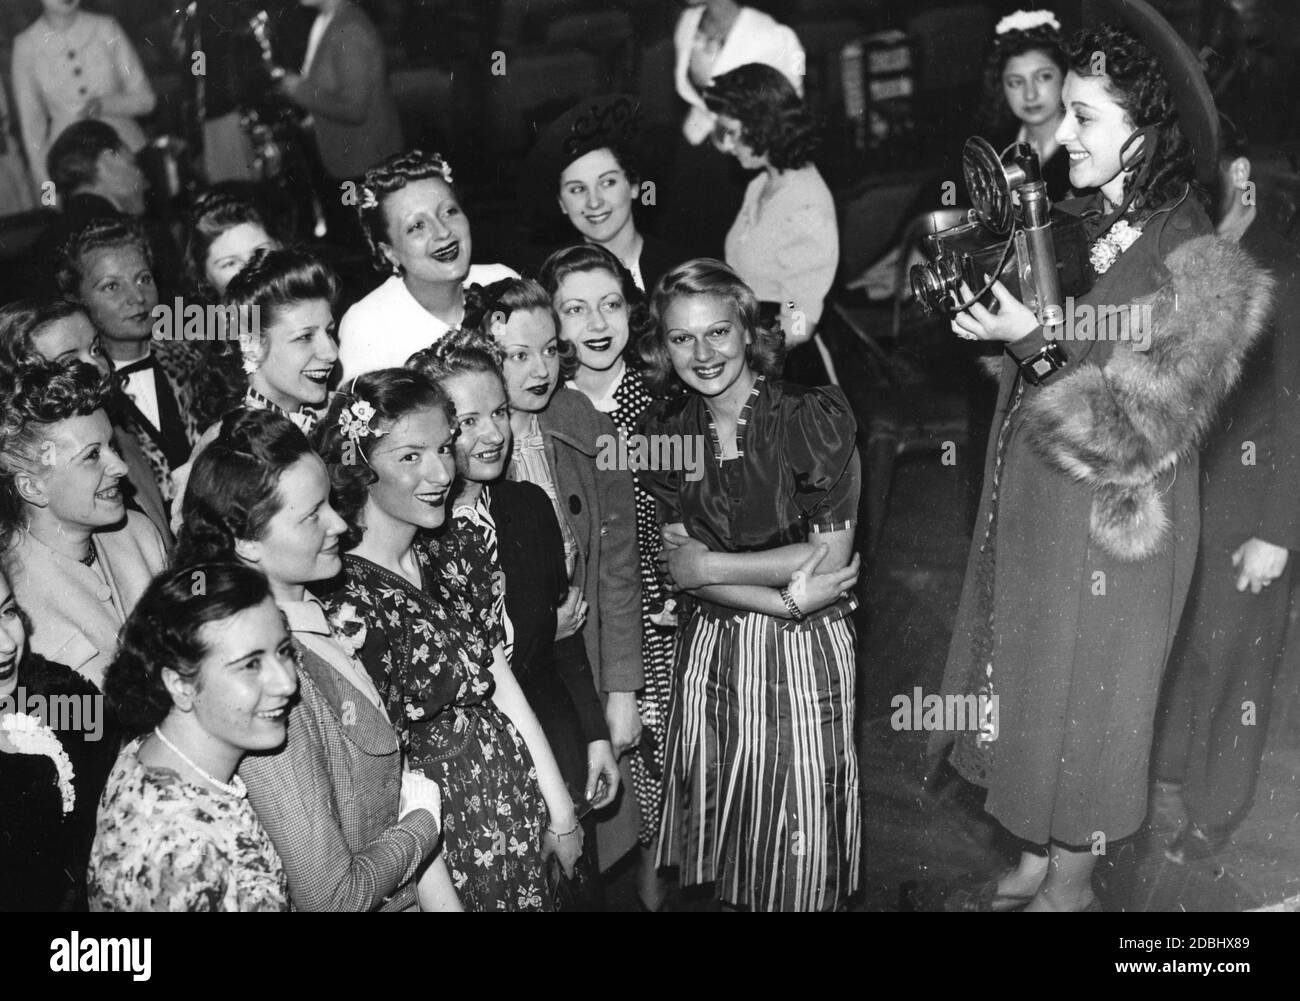 "Selezione dei candidati per il concorso di bellezza 'Miss Photo' a Parigi nel 1939." Foto Stock